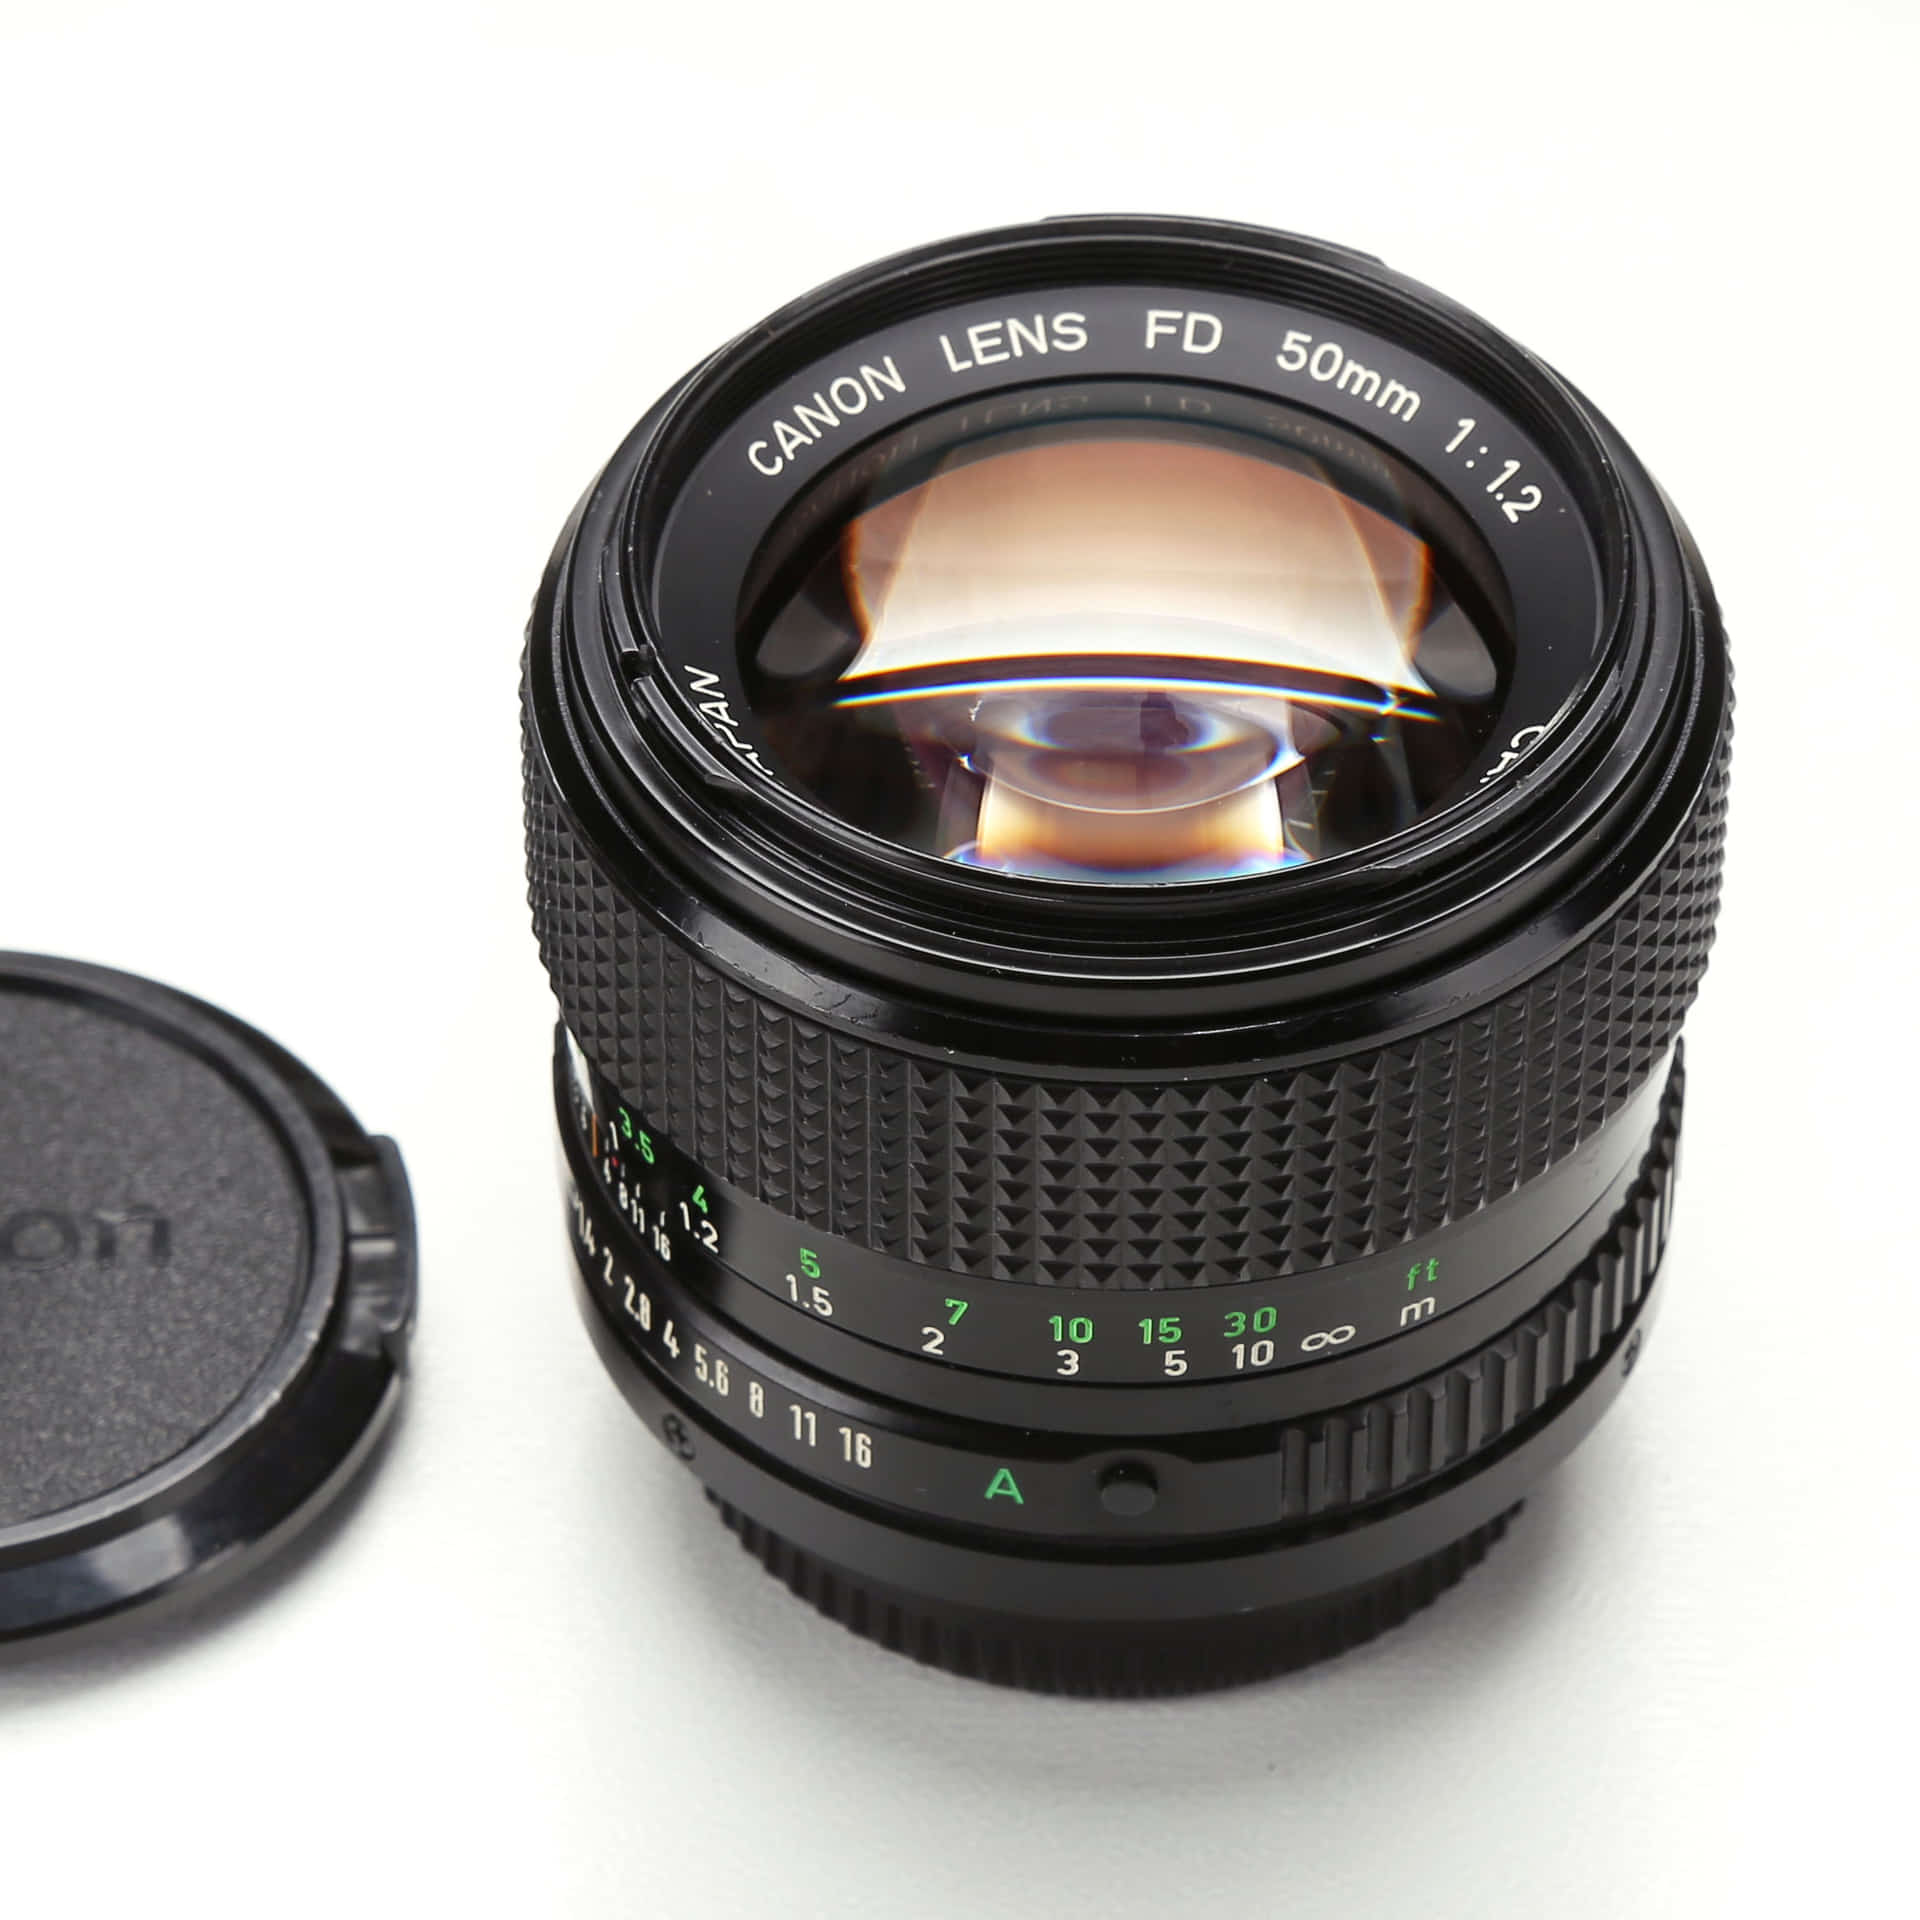 カメラ本体 Canon A-1 レンズ FD 50mm f1.8 本体レンズセット